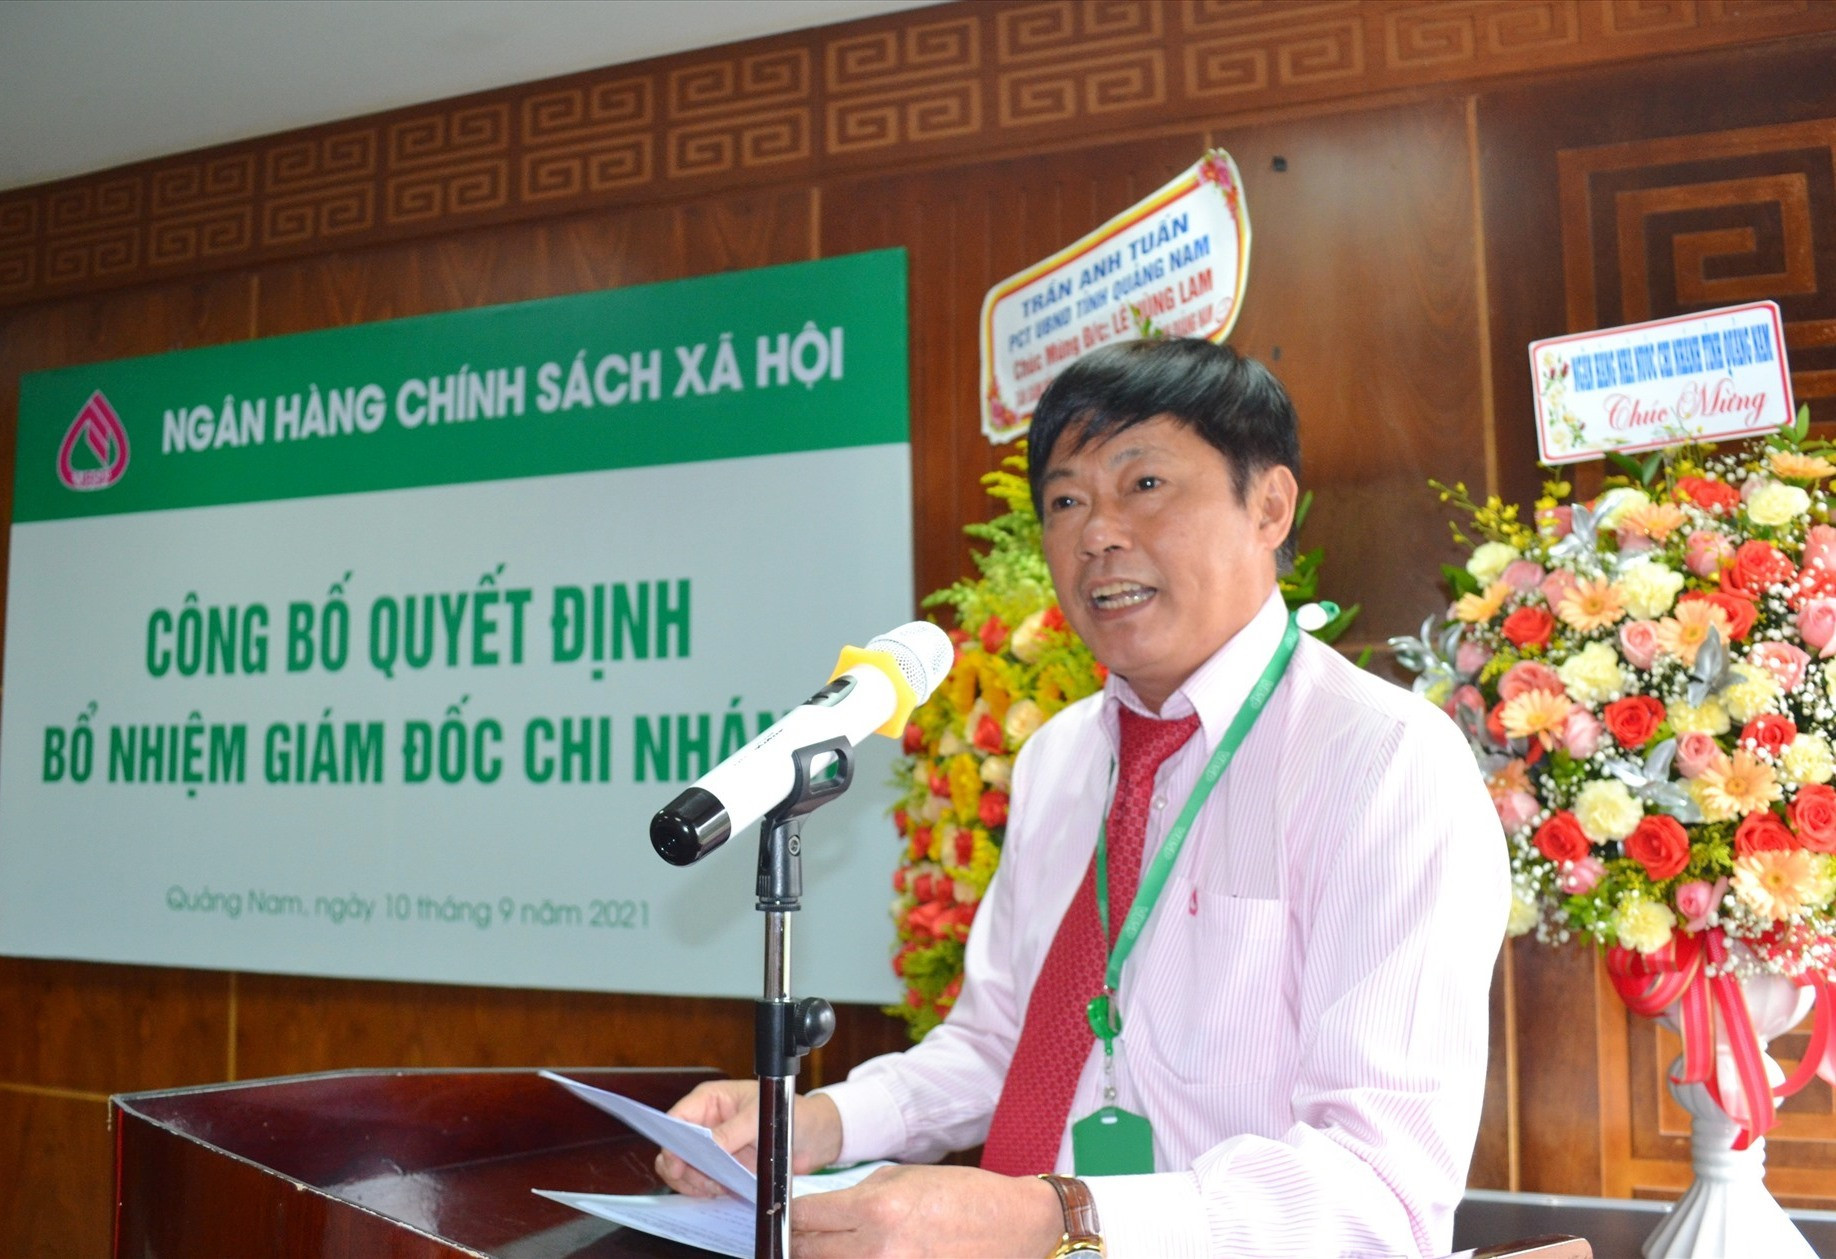 Ông Lê Hùng Lam - Giám đốc Ngân hàng CSXH chi nhánh Quảng Nam cam kết sẽ cùng toàn thể cán bộ, viên chức, người lao động thực hiện xuất sắc các nhiệm vụ được giao.